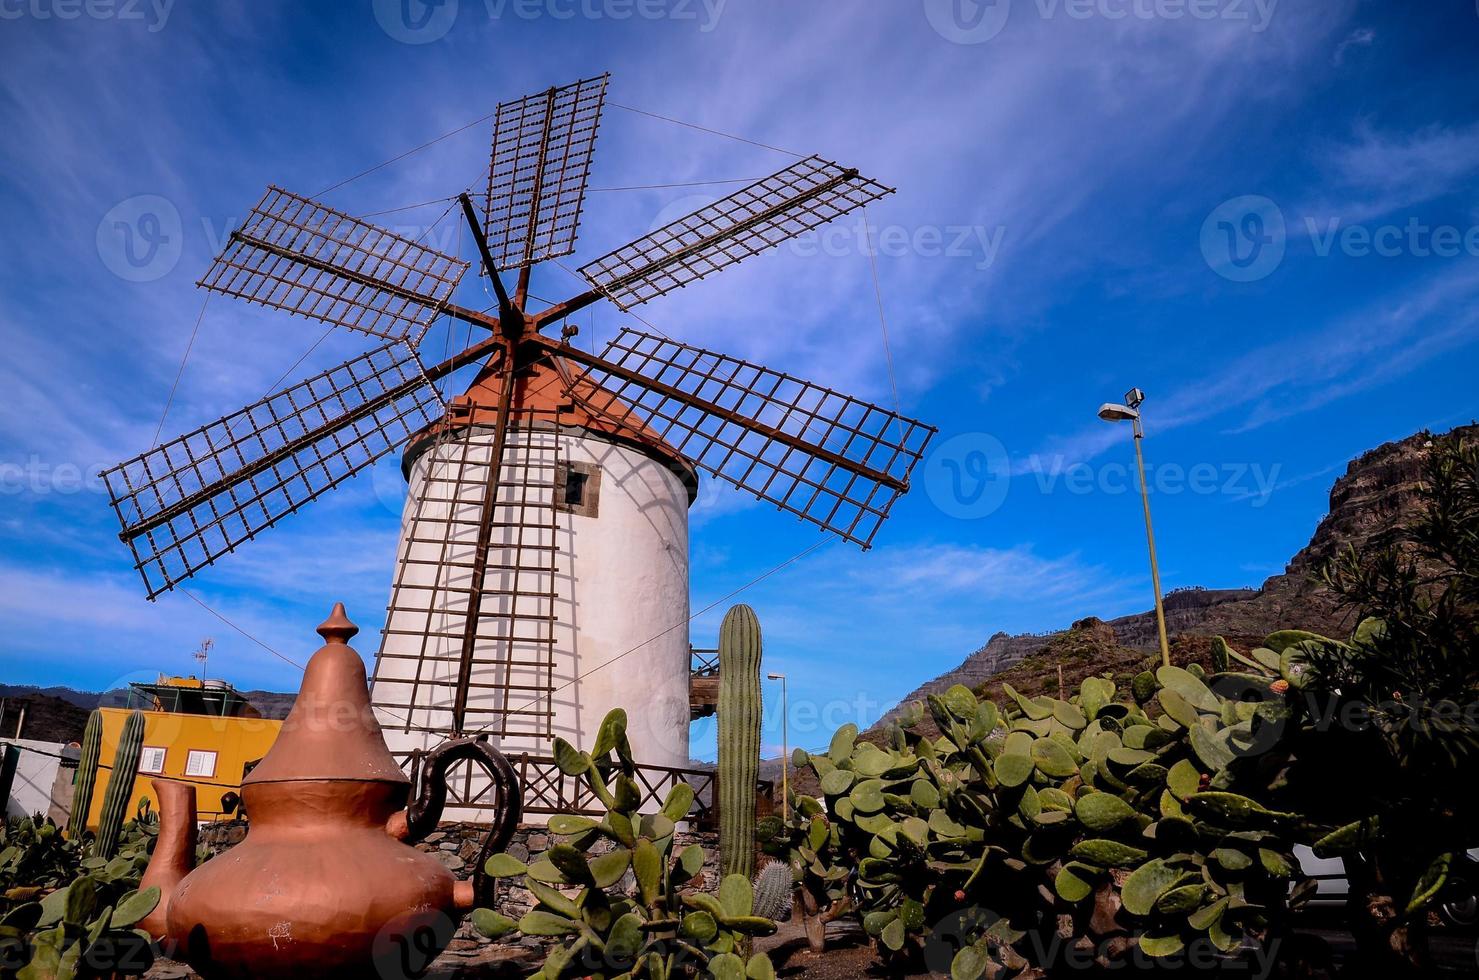 moinho de vento tradicional sob céu azul claro foto